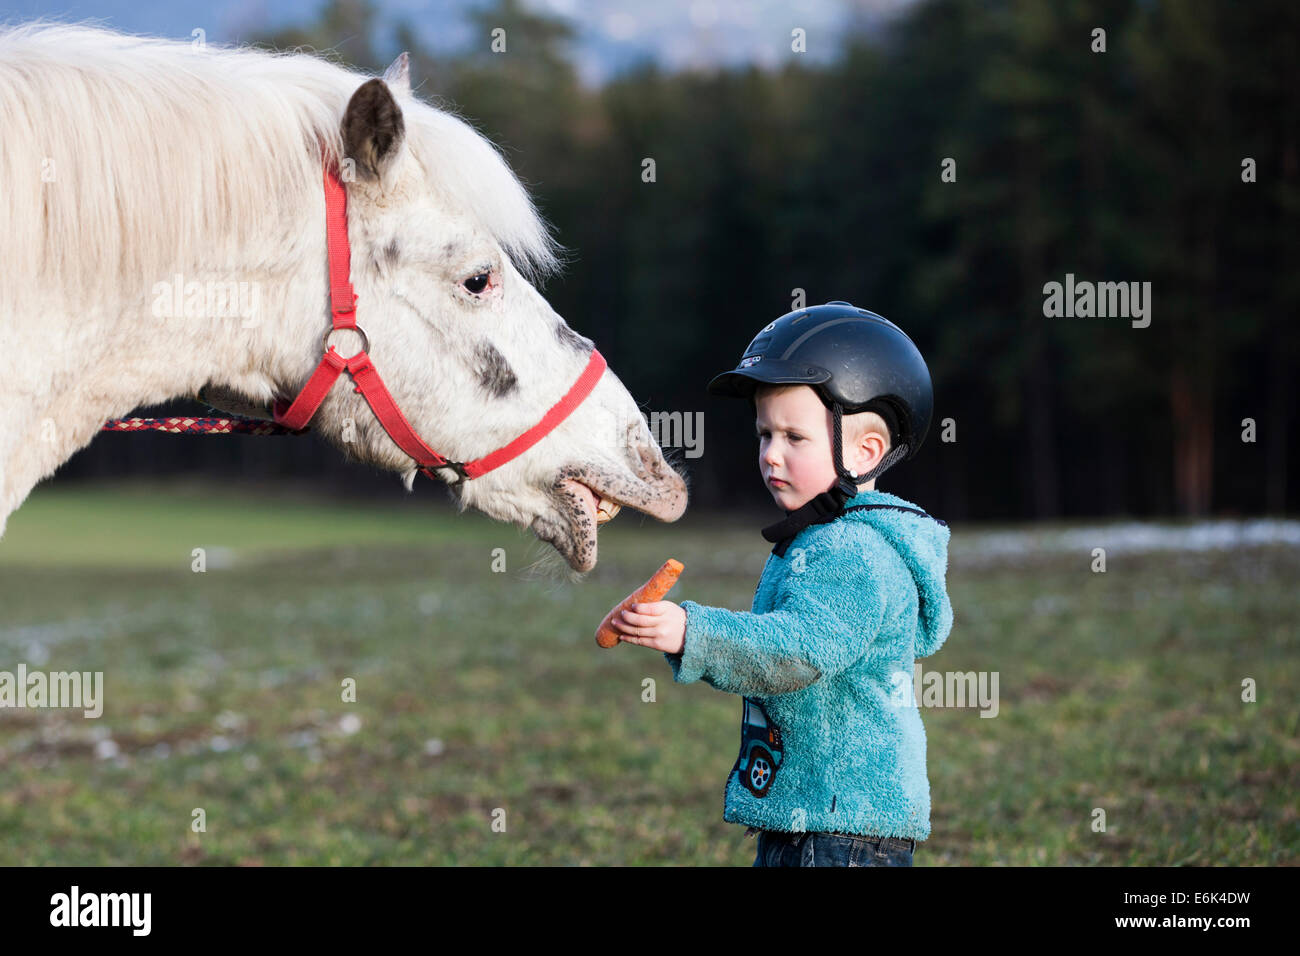 Jeune enfant portant un casque l'alimentation d'un poney, gris, Tyrol, Autriche Banque D'Images